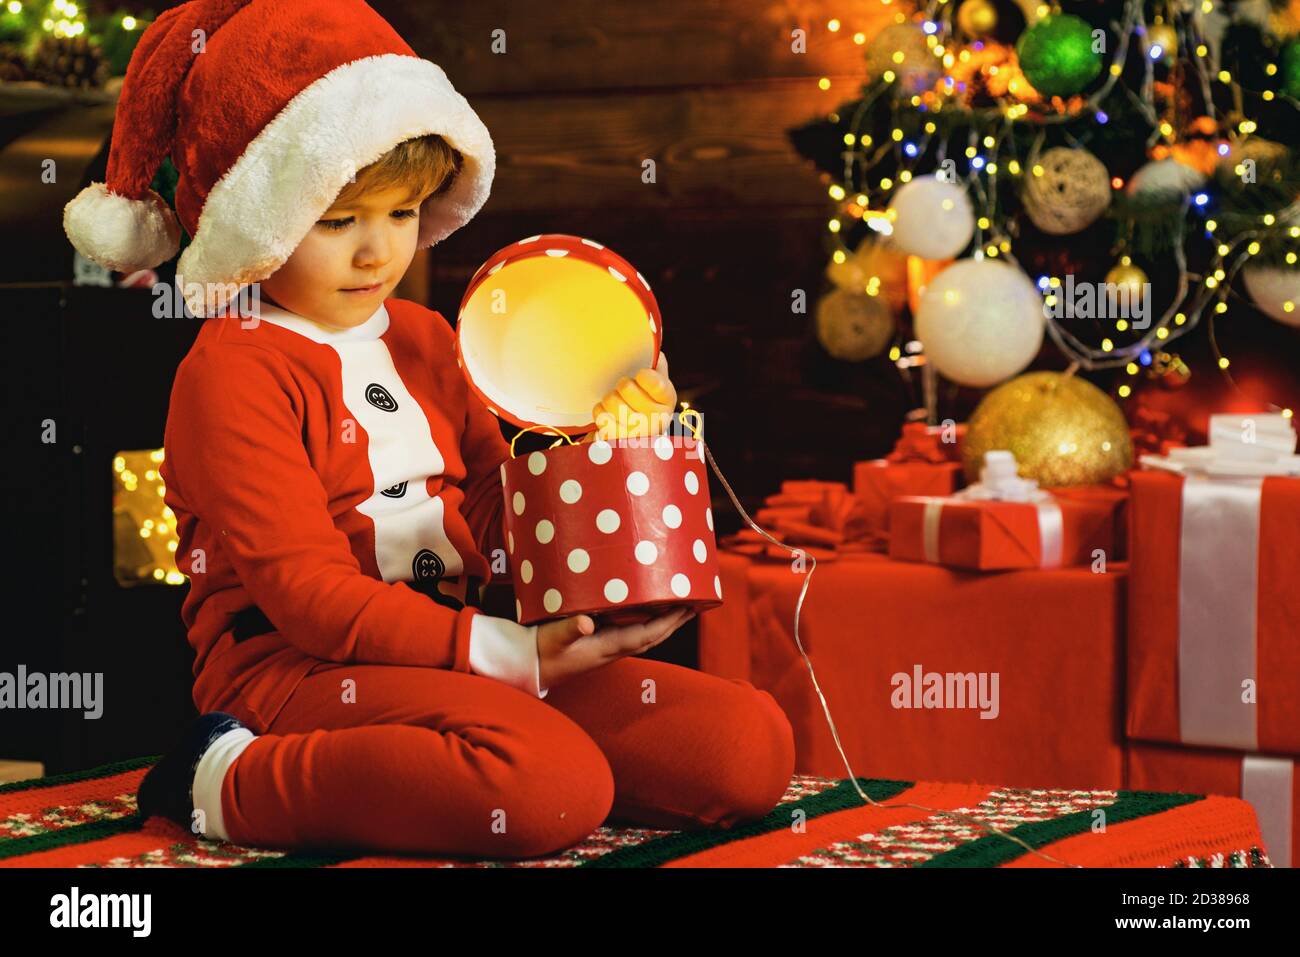 Niedlichen kleinen Jungen spielt mit weihnachtsschmuck. Familienurlaube Konzept. Schönes Baby Kind genießen weihnachten. Kindheitsmomente. Weihnachtsbaum Stockfoto